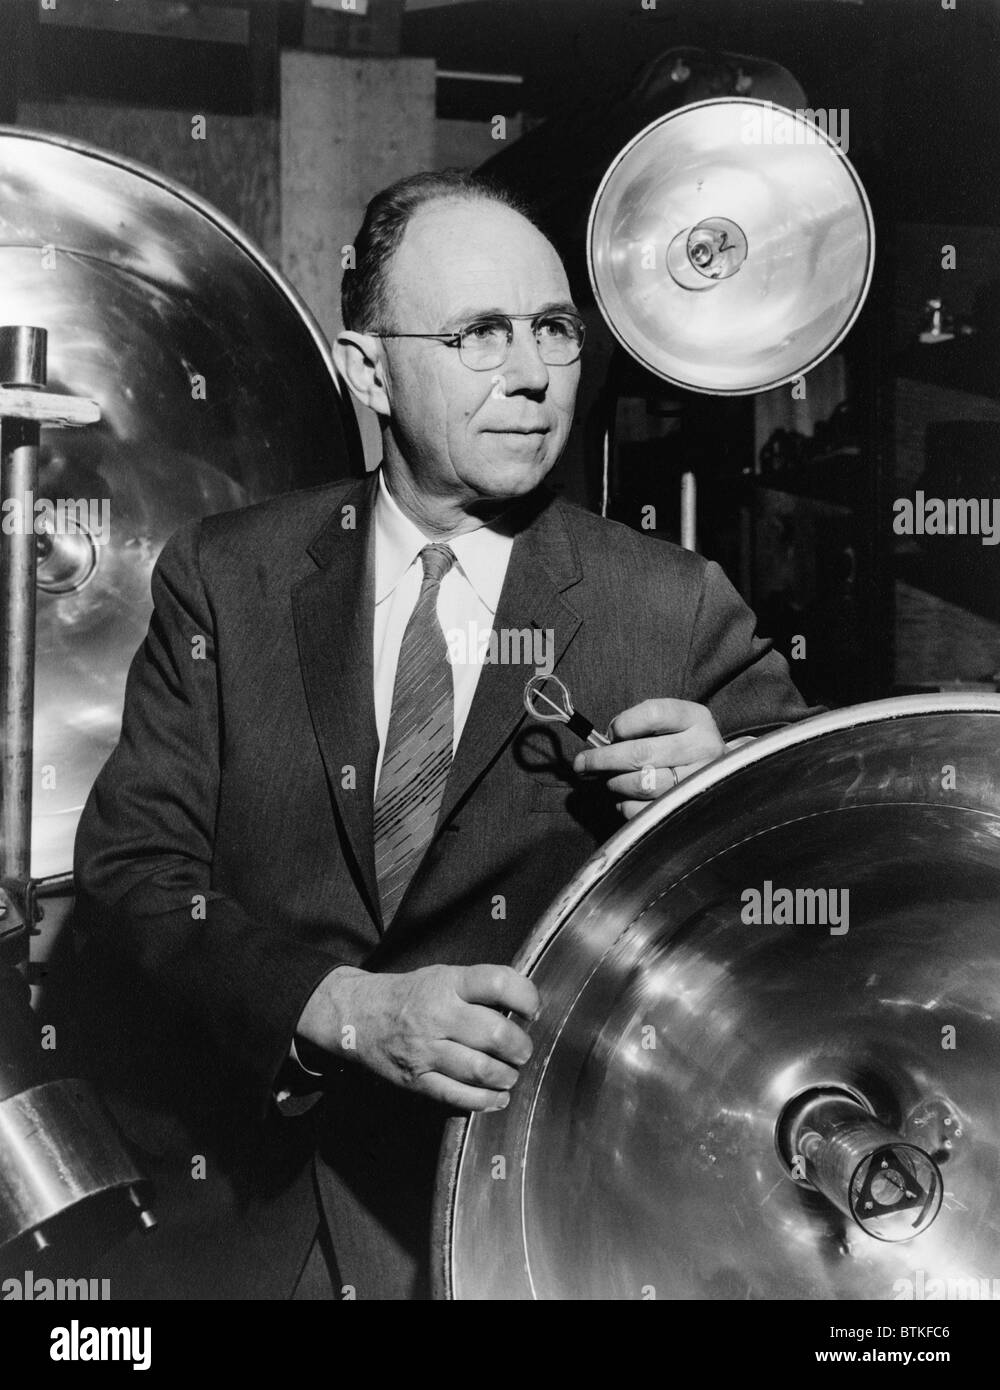 Le Dr Harold E. Edgerton (1903-1990), ingénieur en électricité américain et photographe, développé stroboscopique temporisé (strobe), la technologie qui produit des éclats de lumière forte rapide pour capturer des images d'un instant, comme une balle dans les airs. Ca. Années 1960. Banque D'Images